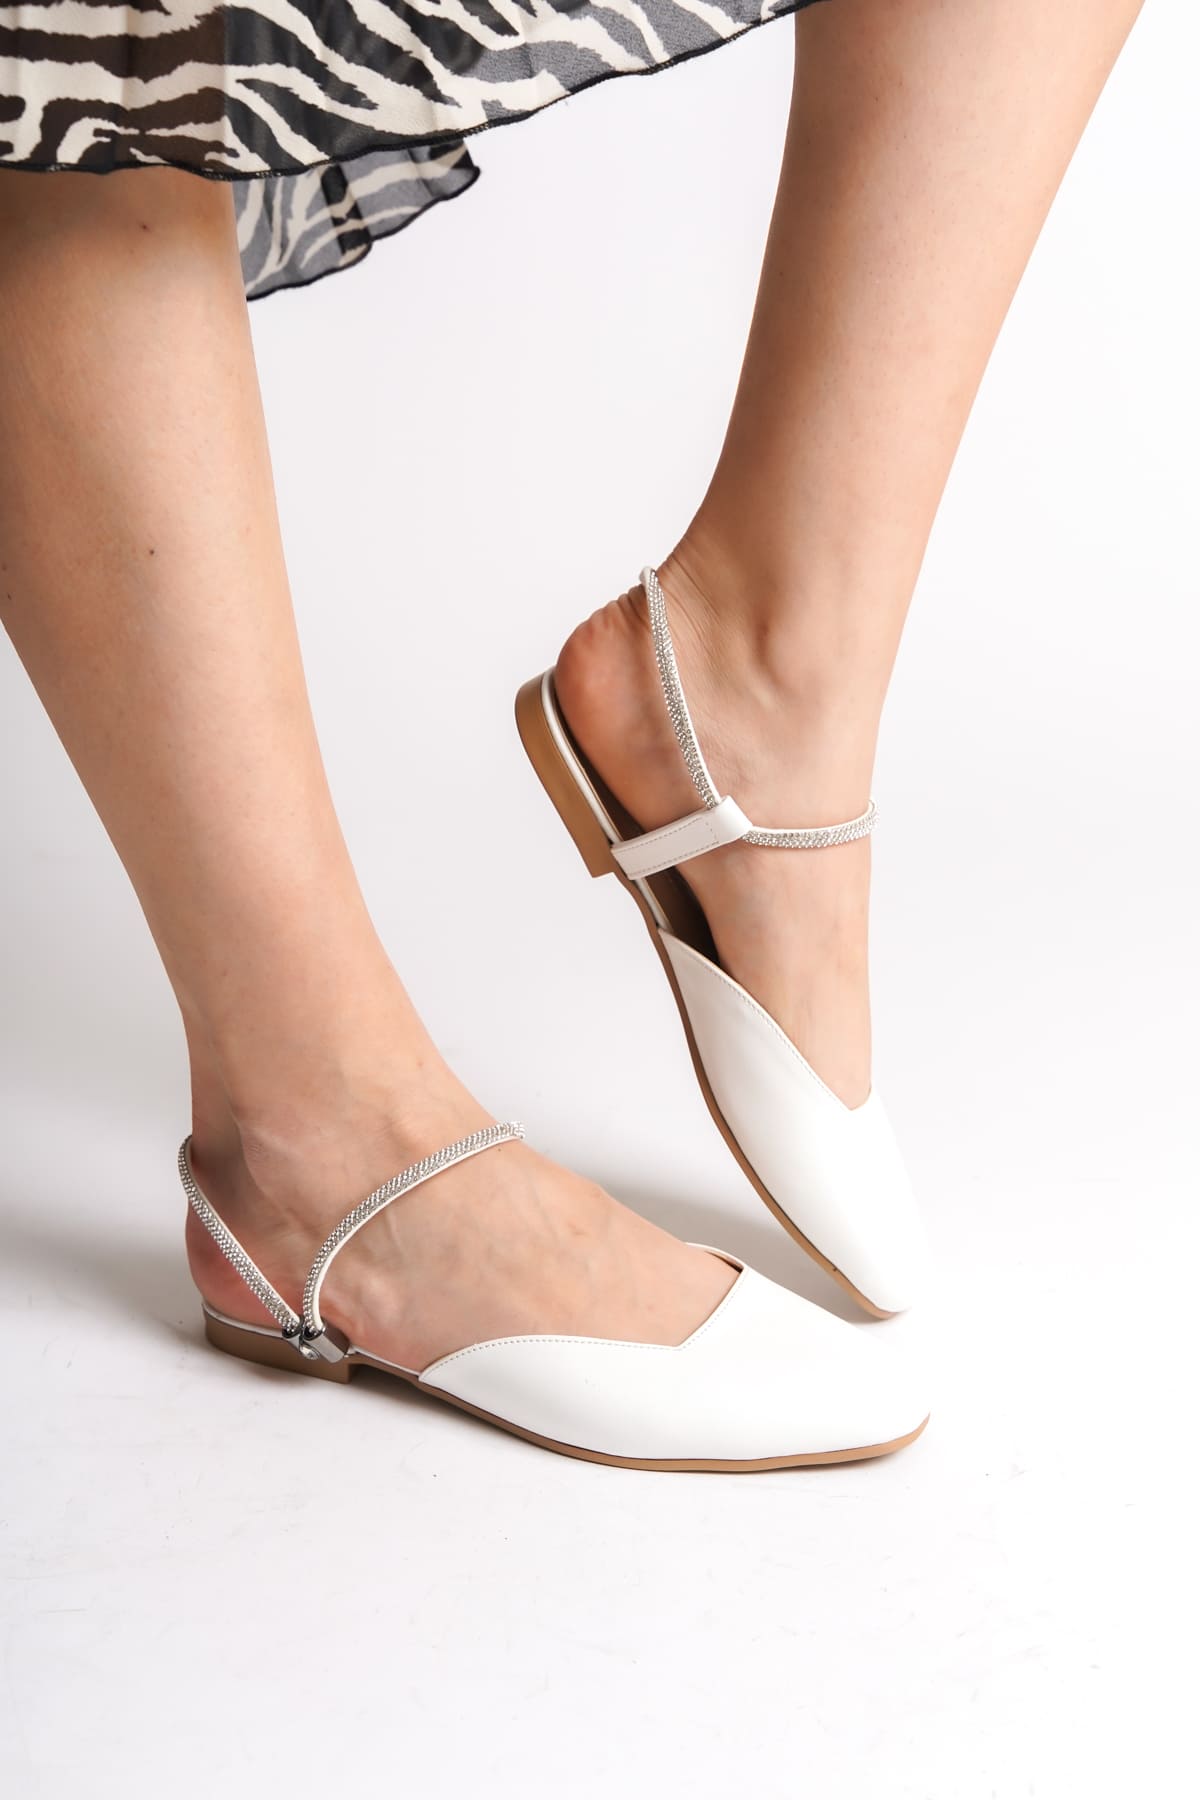 CLZ948  Lastikli Ortopedik Rahat Taban Bilekten Taş Detaylı Kadın Babet Ayakkabı KT Beyaz